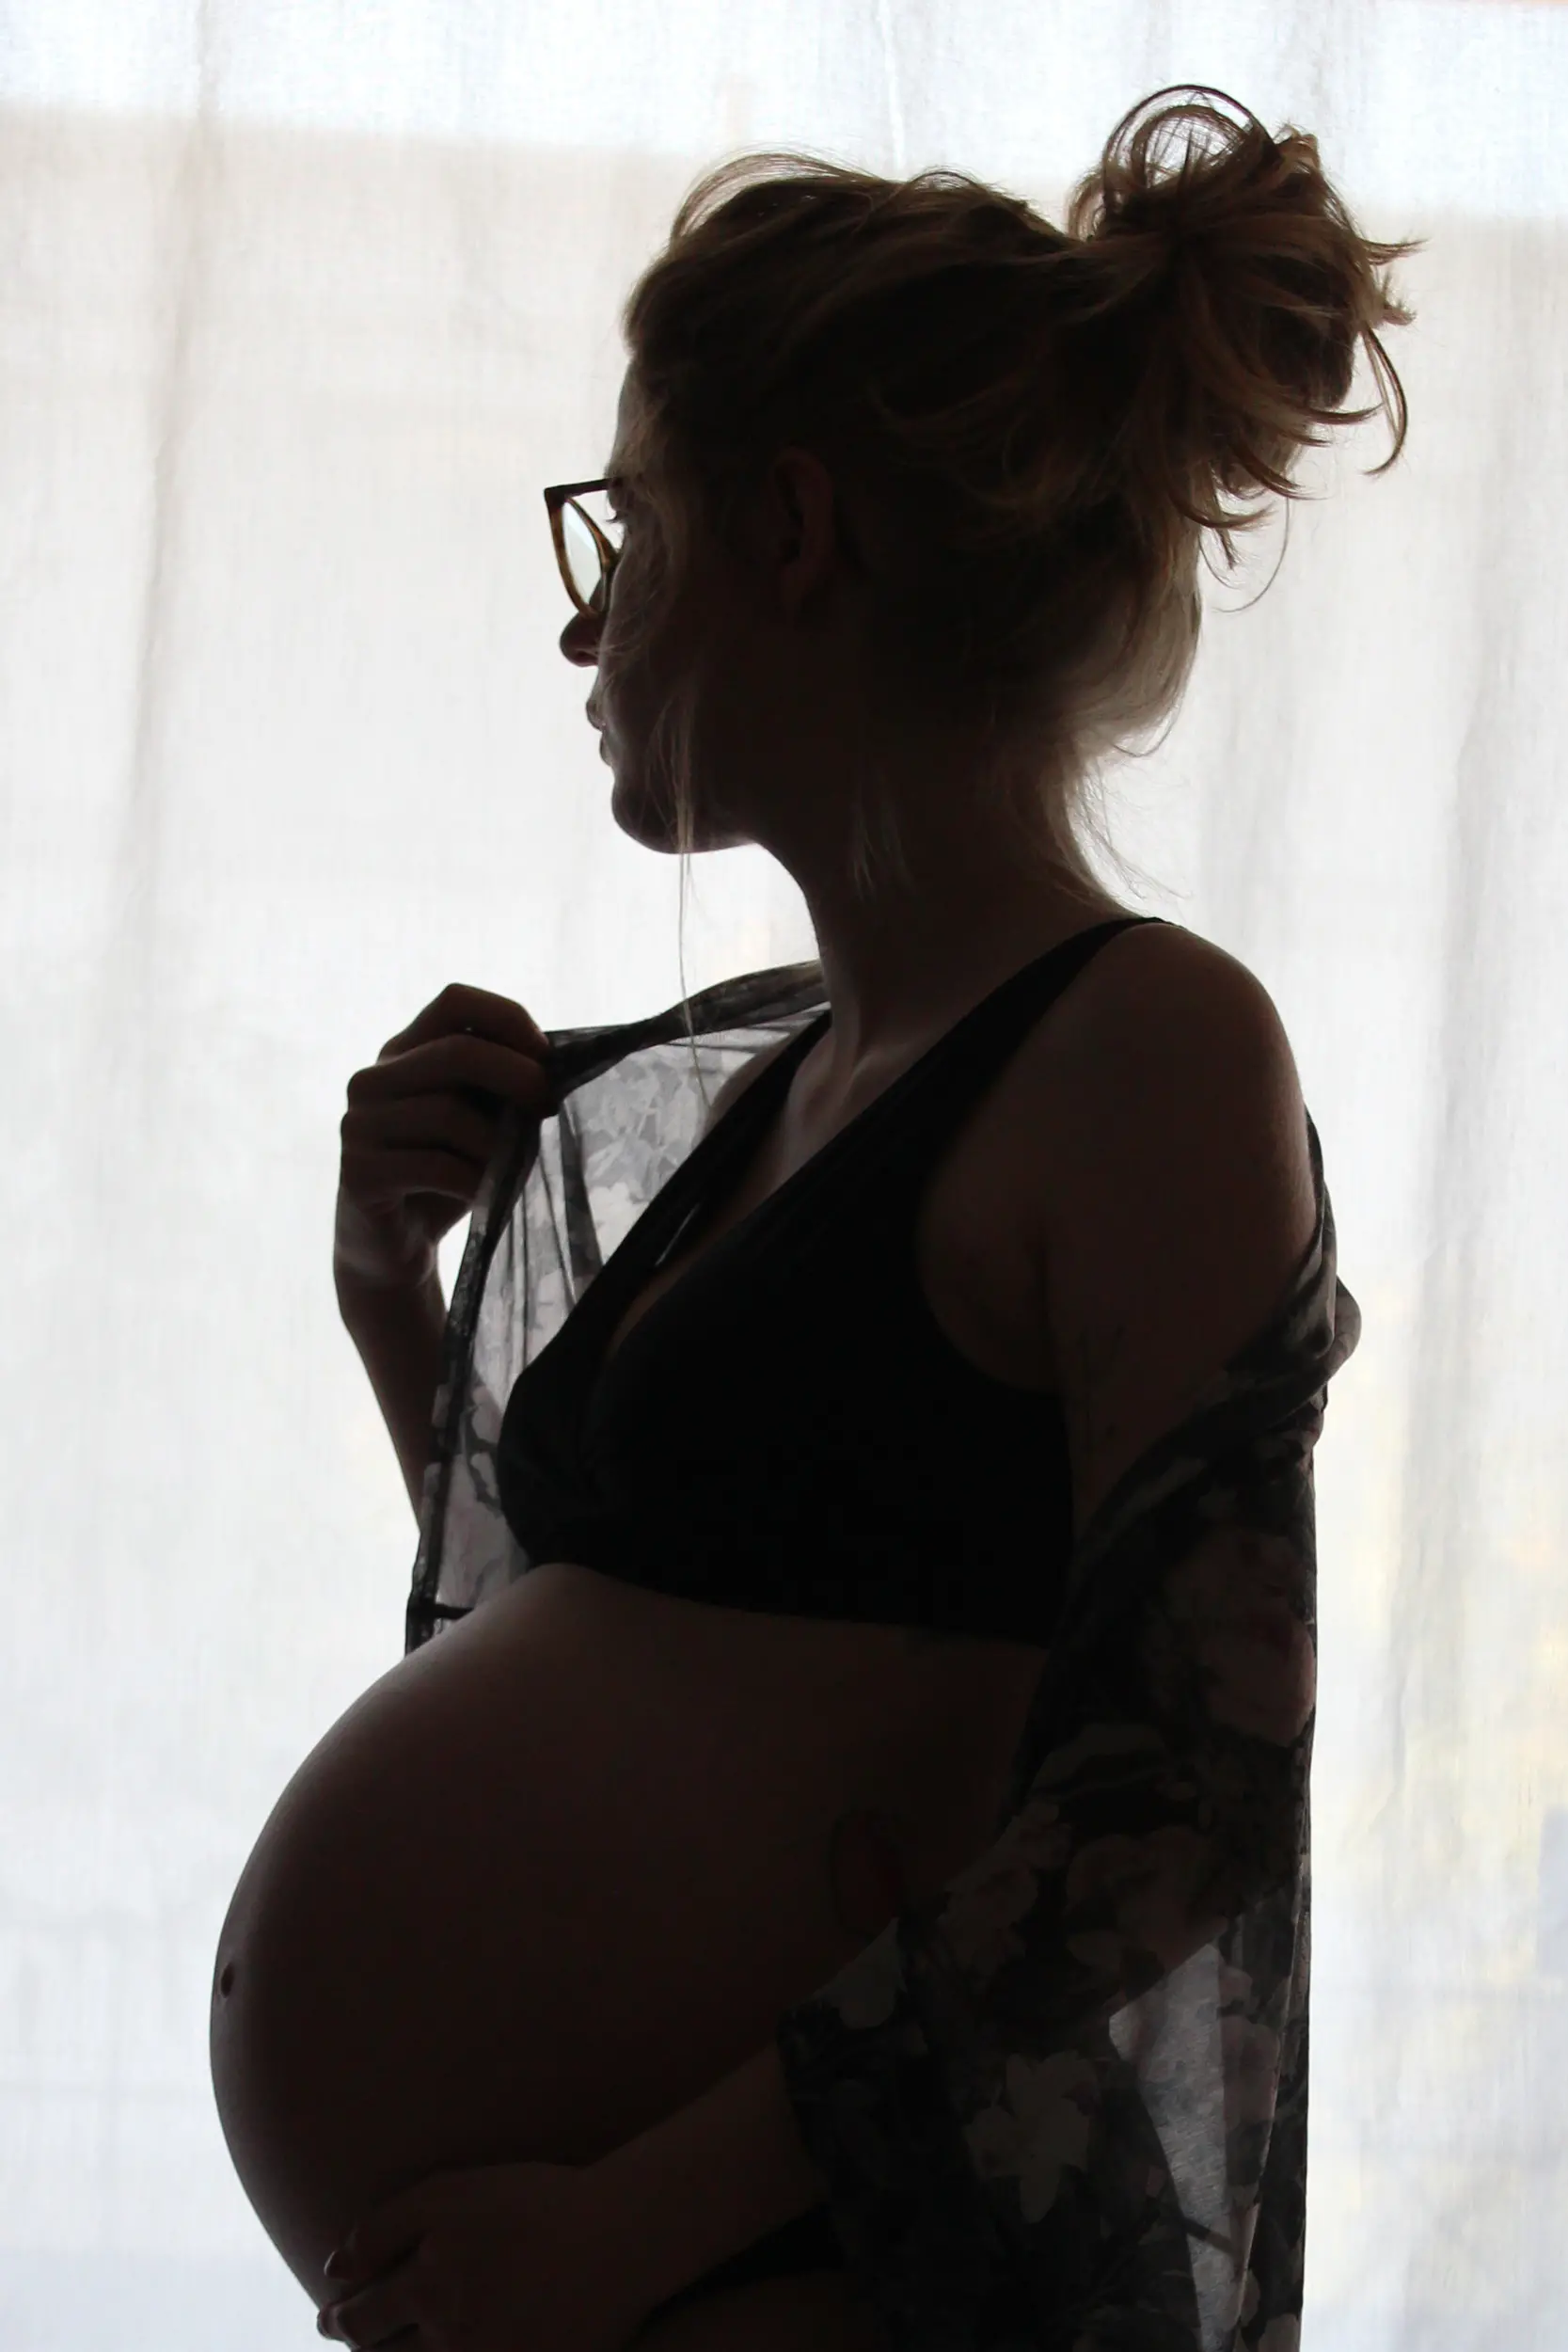 Fremdkörper während der Schwangerschaft